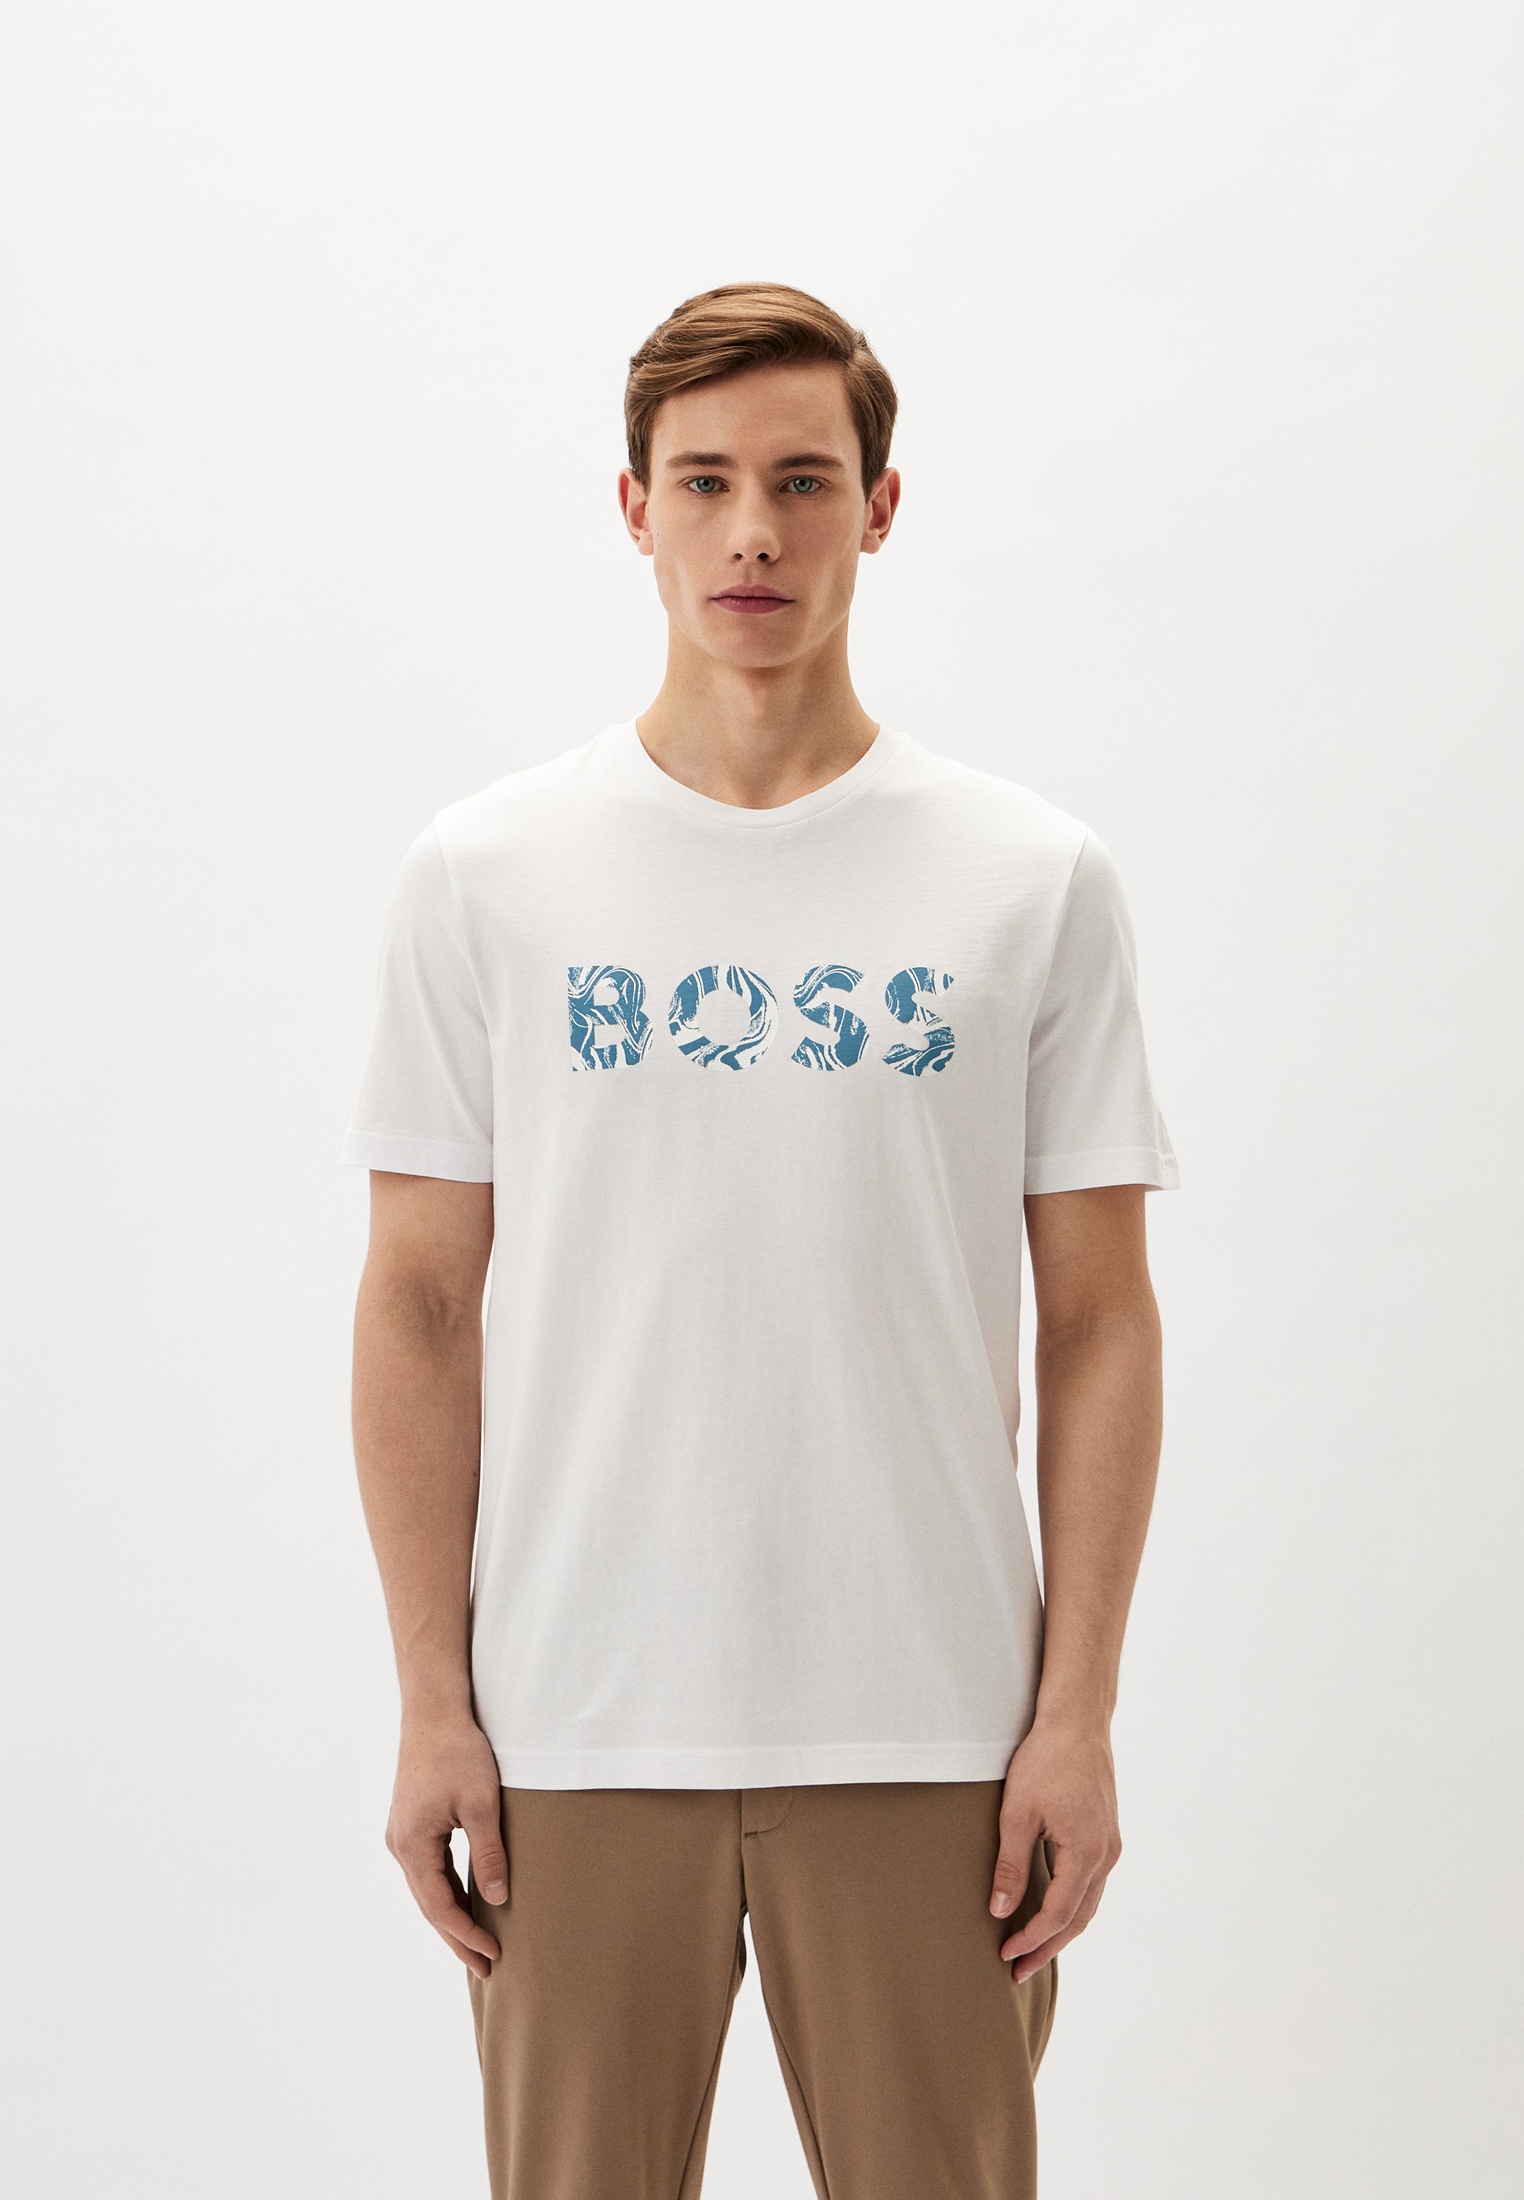 Мужская футболка Boss (Босс) 50515997: изображение 1